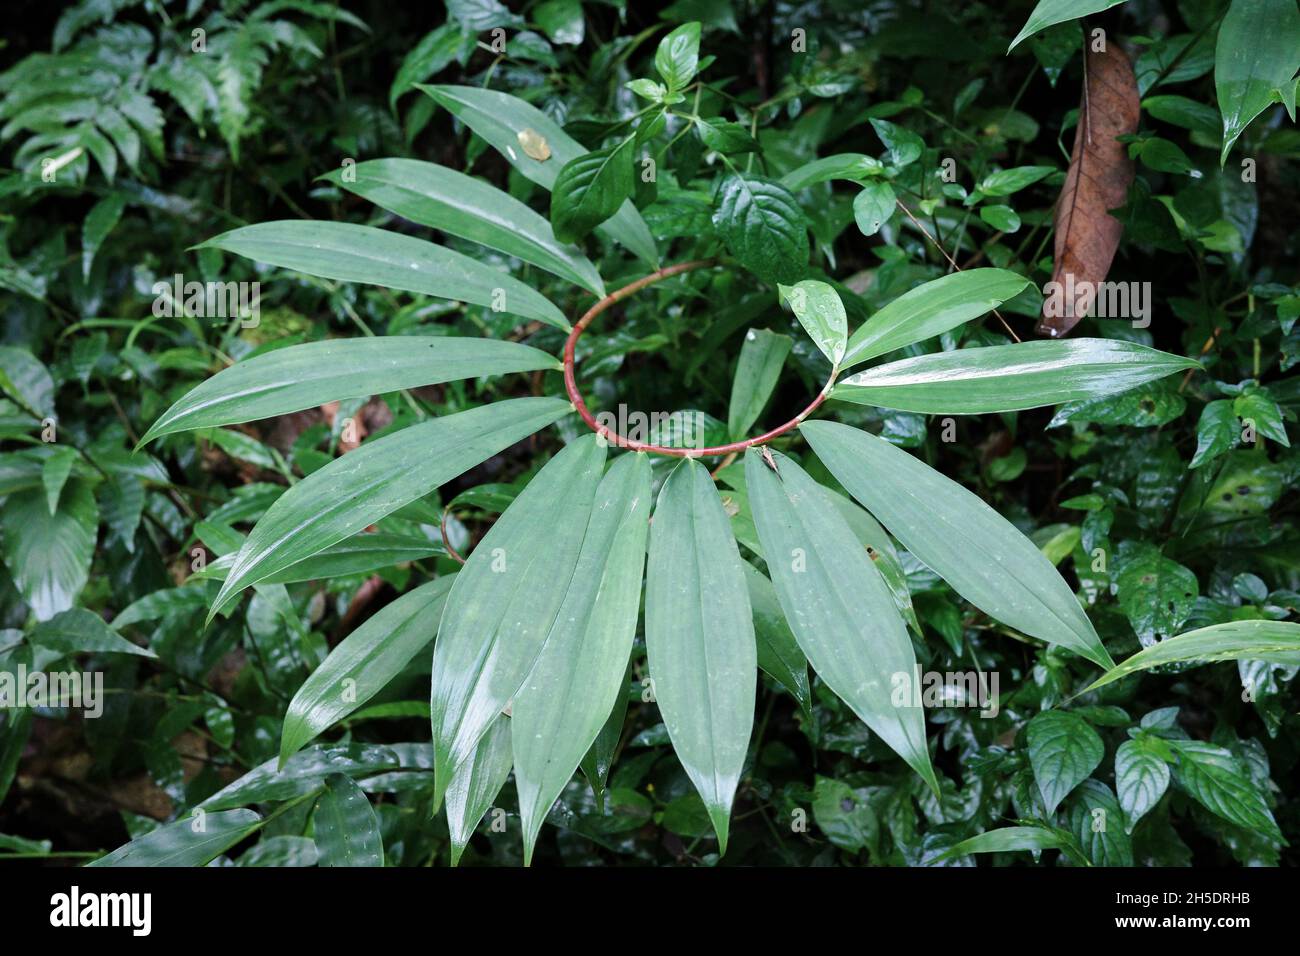 Gros plan sur les feuilles vertes en forme de courbe de branche à l'intérieur de la forêt tropicale. Banque D'Images